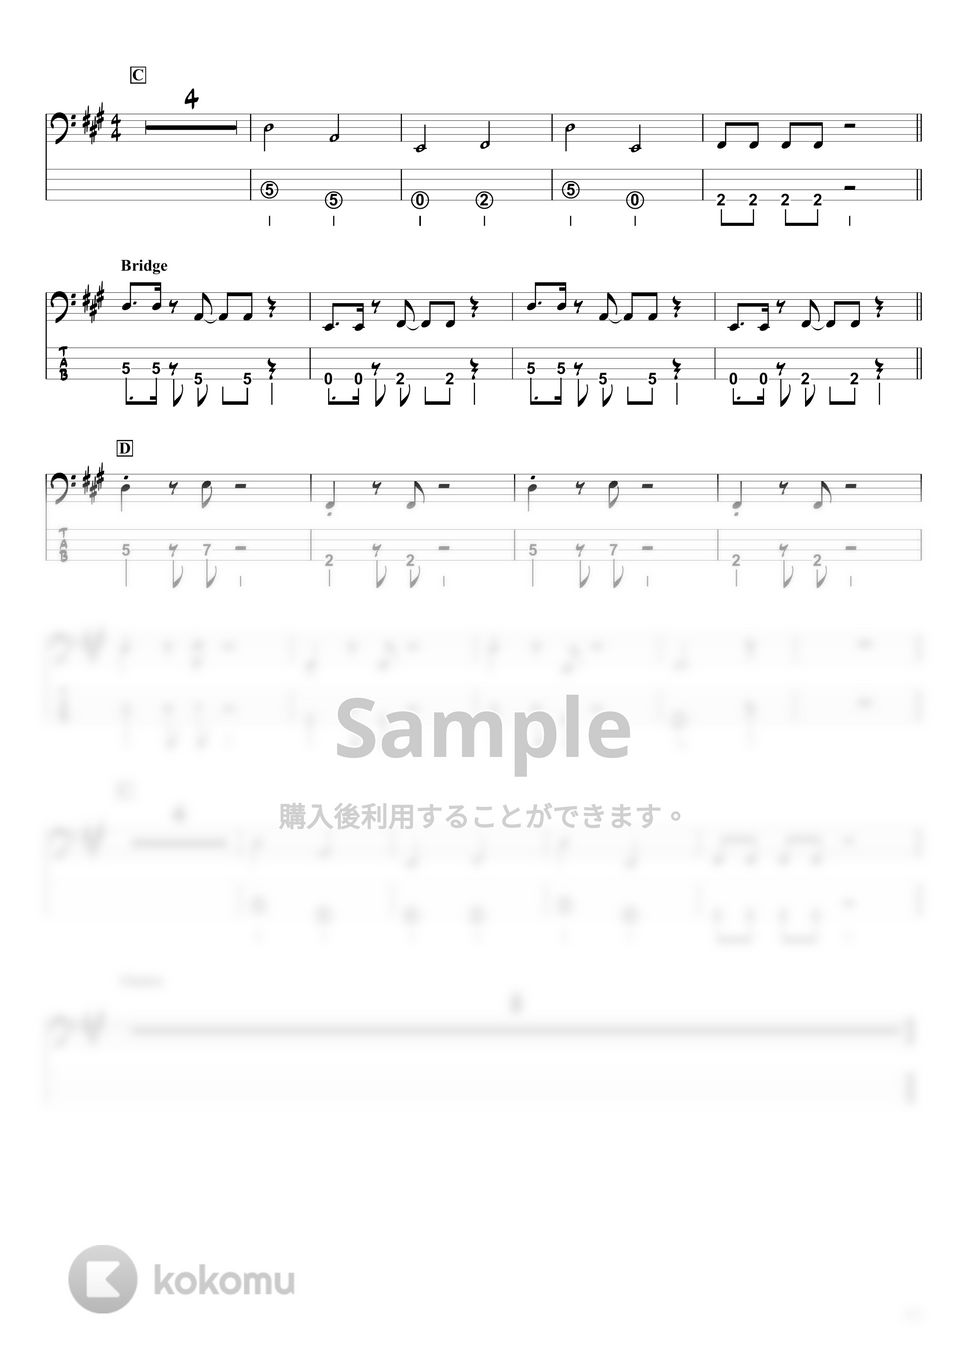 優里 - かくれんぼ (『ベースTAB譜』☆4弦ベース対応) by swbass